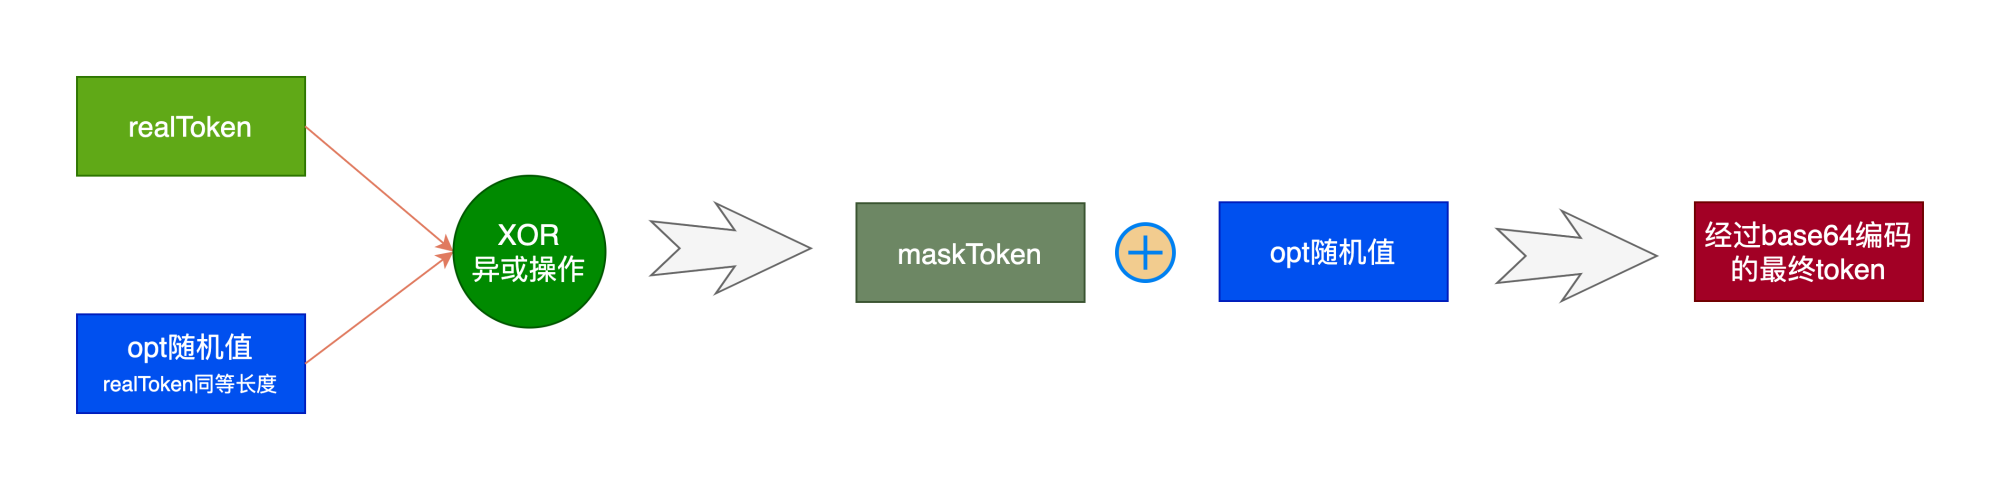 算法反作弊系统流程图-token编码过程.png